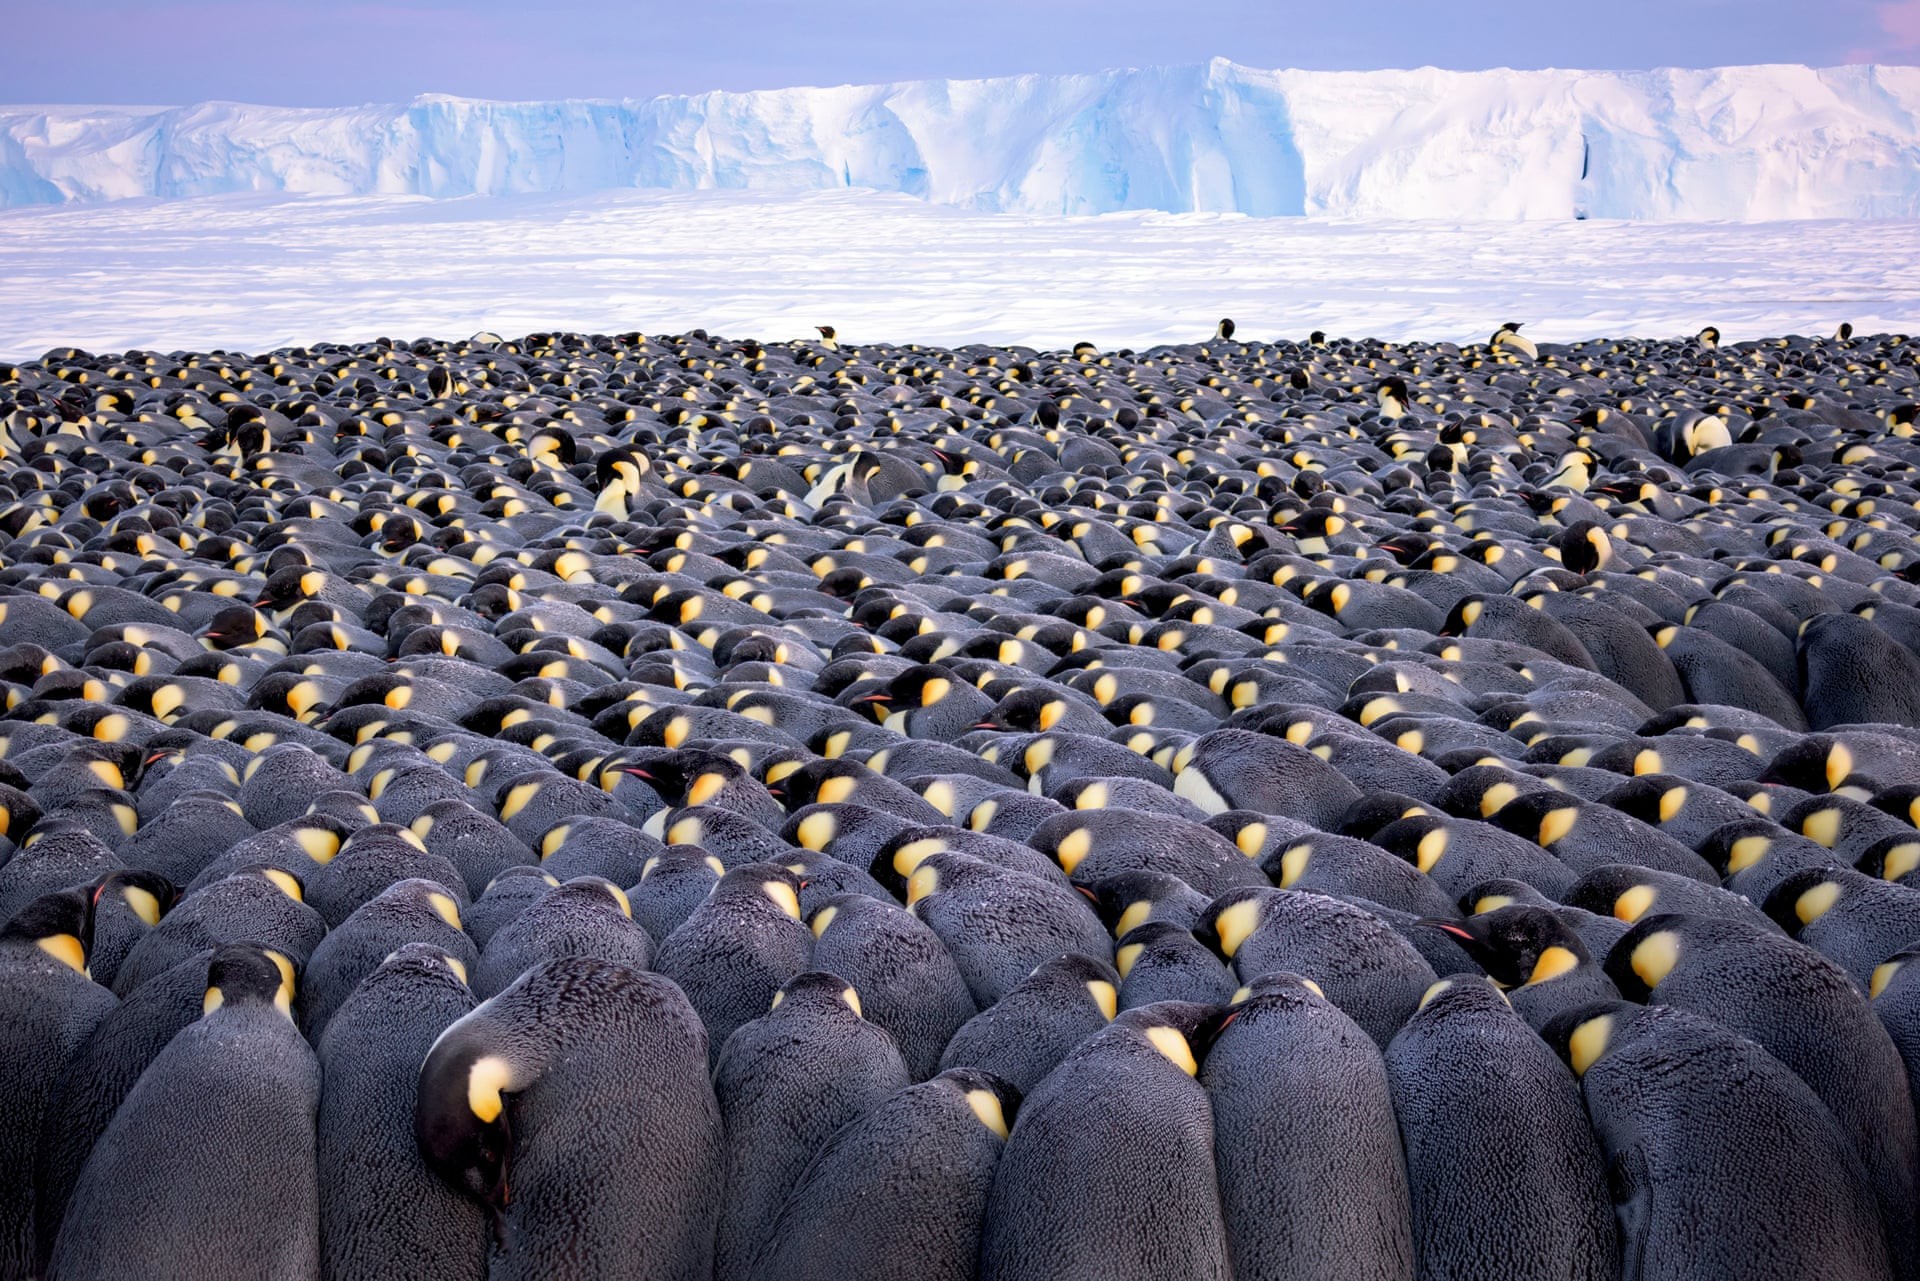 Императорские пингвины на льдах залива Атка в Антарктиде. Лауреат премии «Фотограф года дикой природы, портфолио». Автор Штефан Кристманн